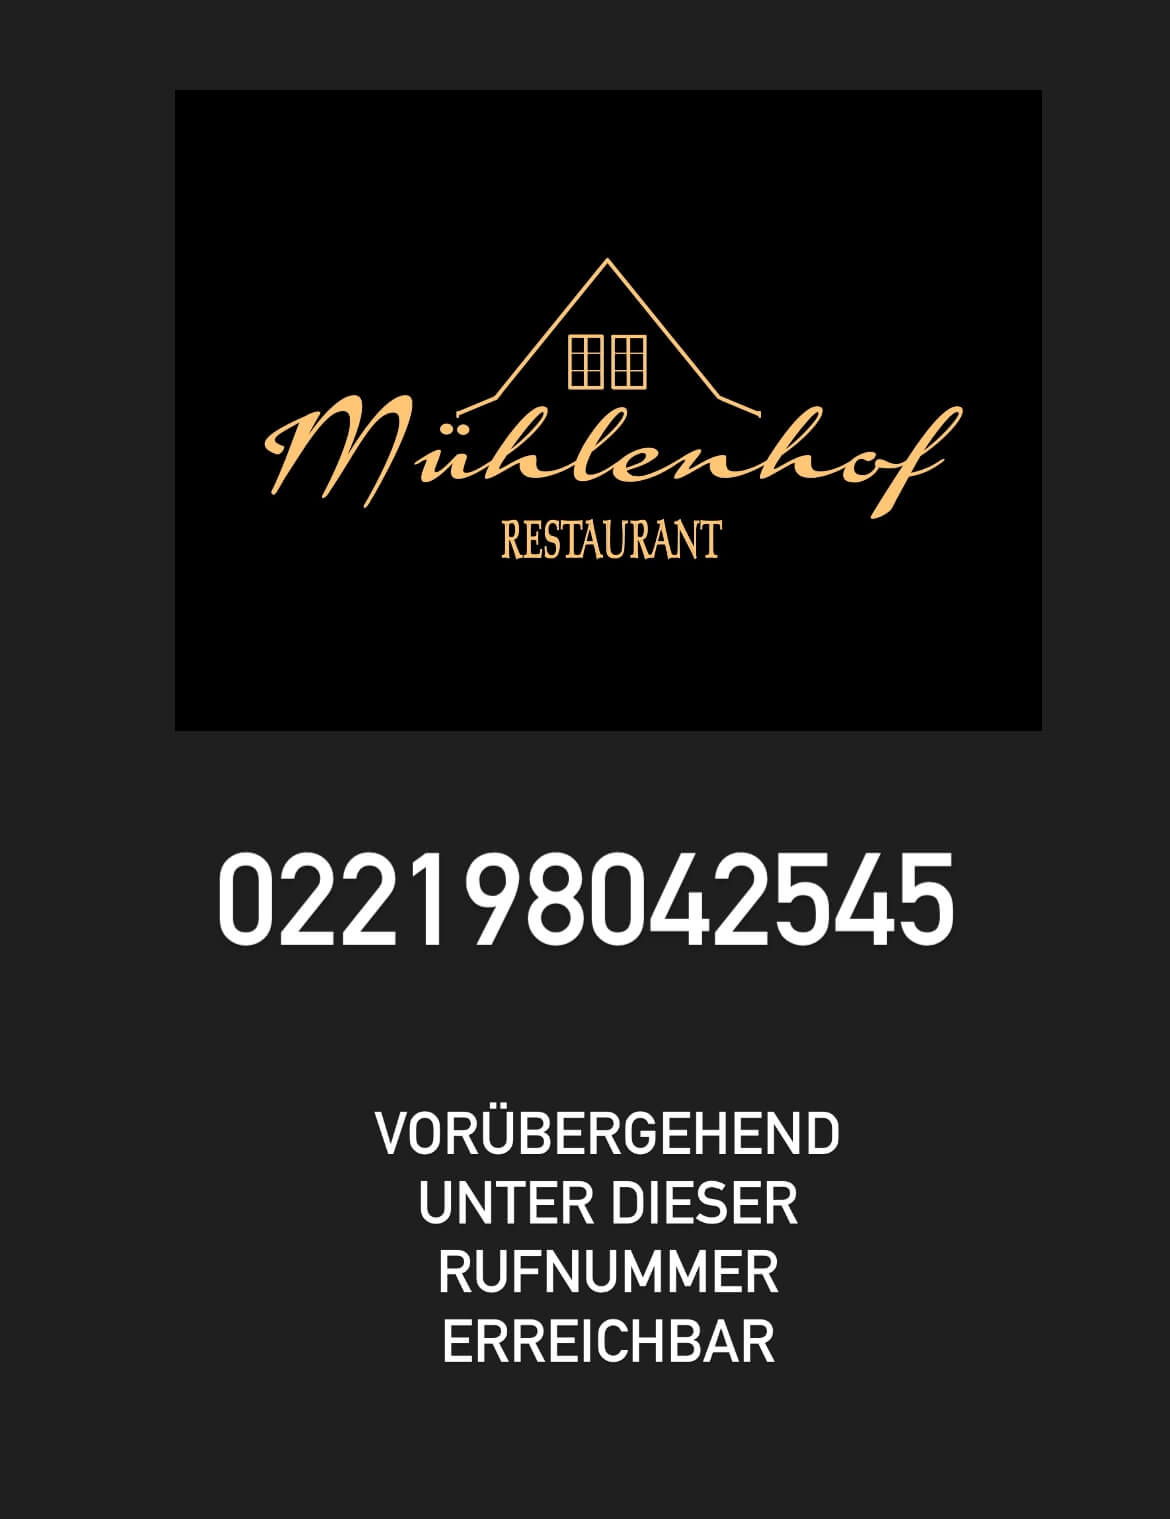 voruebergehende-telefonnummer-restaurant-muehlenhof-koeln-neues-logo